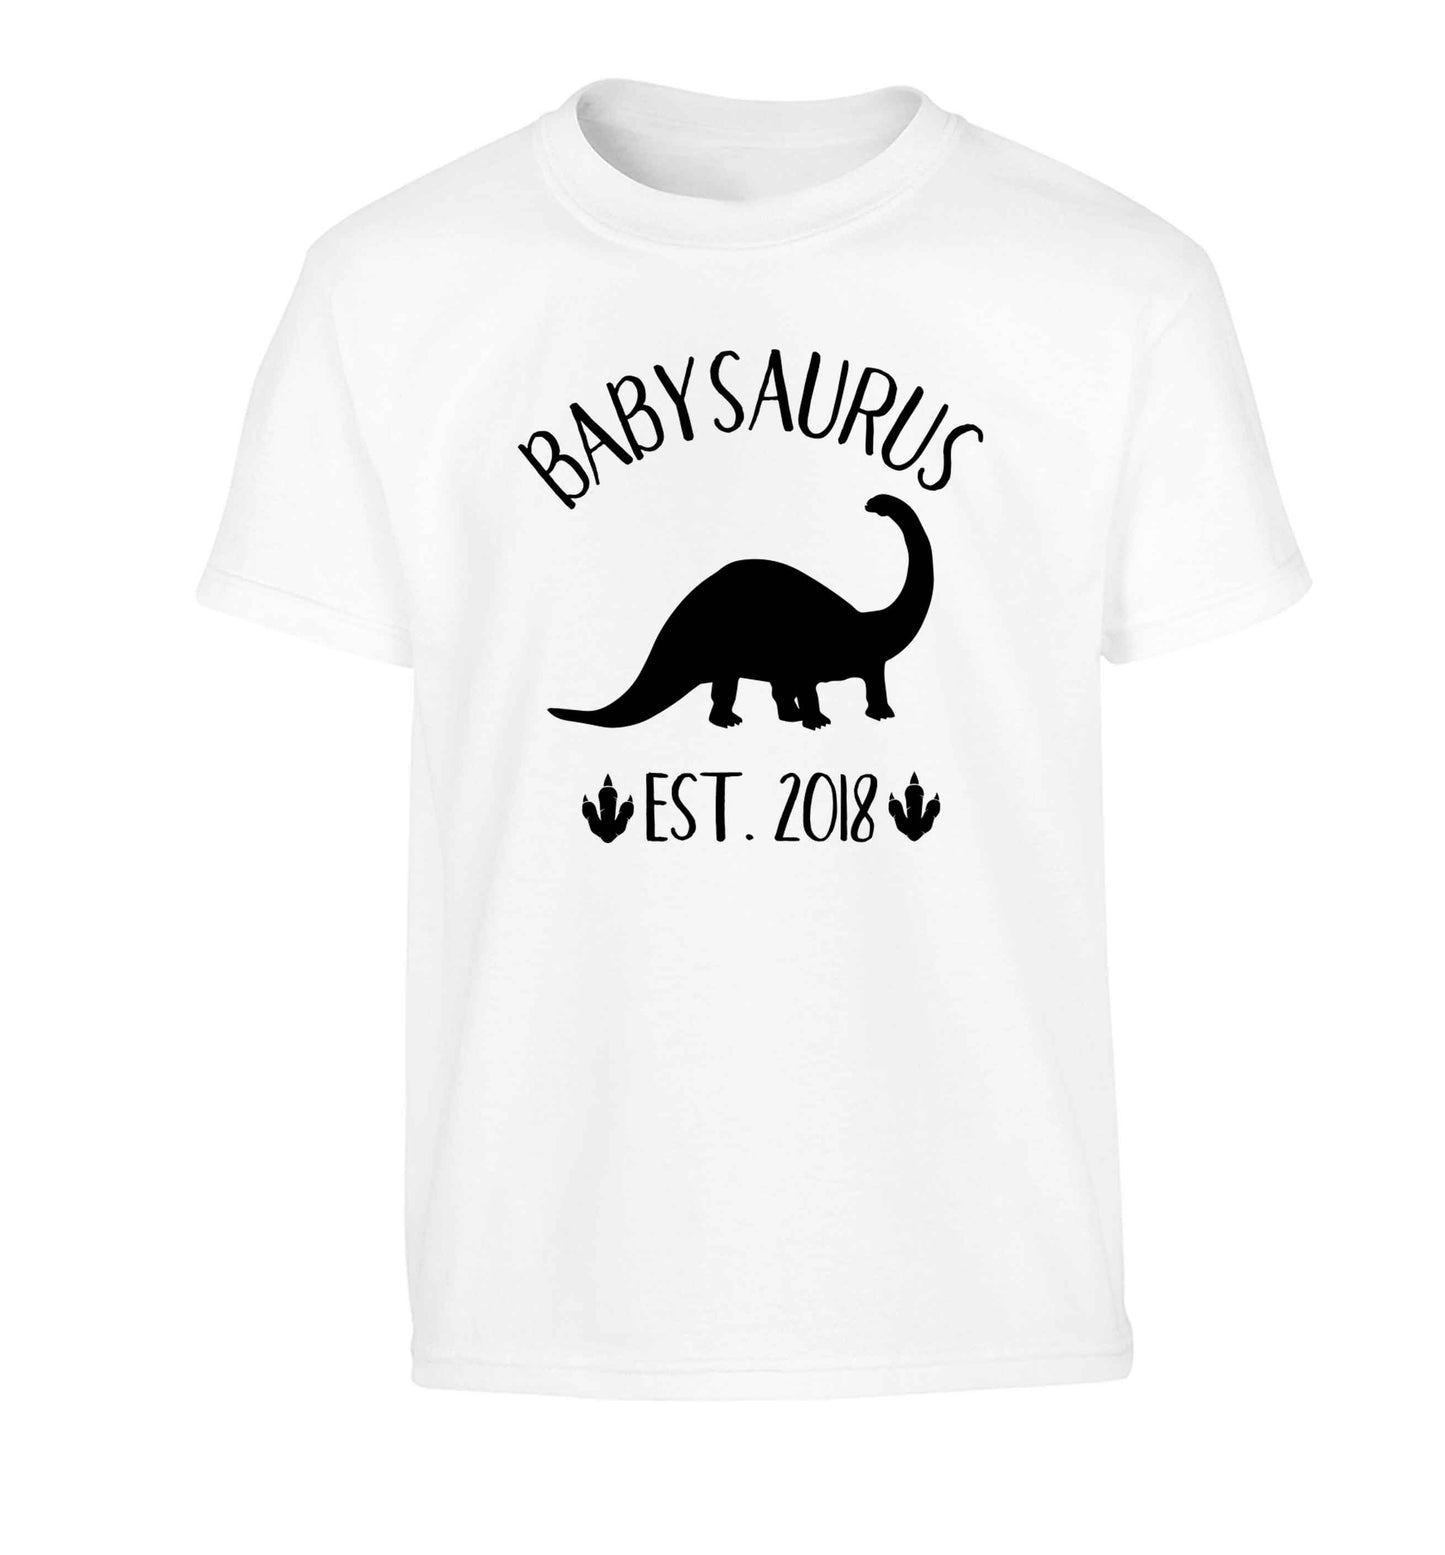 Personalised babysaurus since (custom date) Children's white Tshirt 12-13 Years